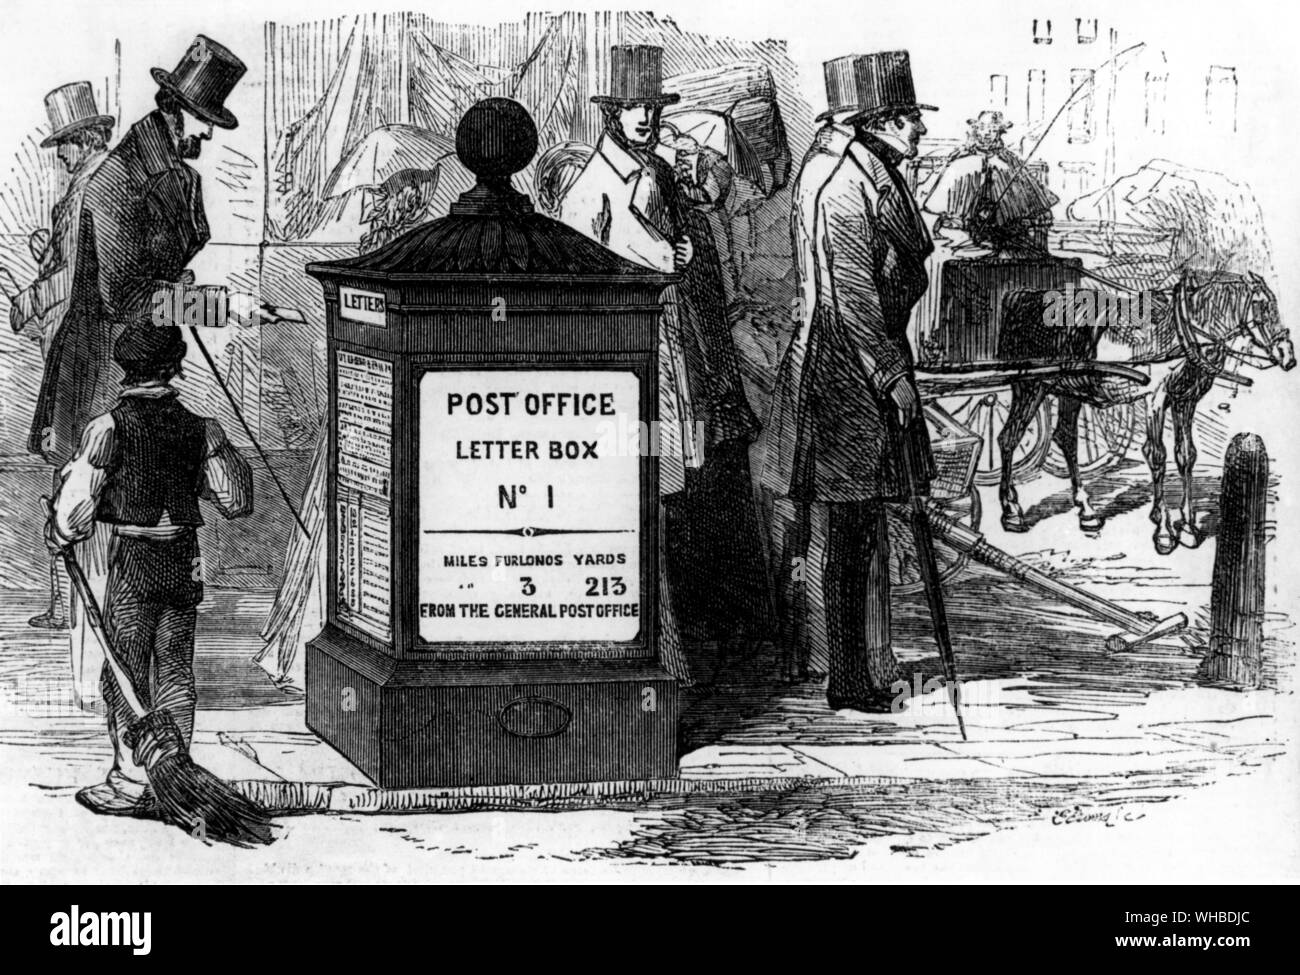 Viktorianischer Briefkasten - 3 Achtelmeilen 213 Yards aus dem General Post Office - London's erste Säule, an der Ecke der Fleet Street und Farringdon Straße. Durch A. E. Cowper in 1855-57. Stockfoto